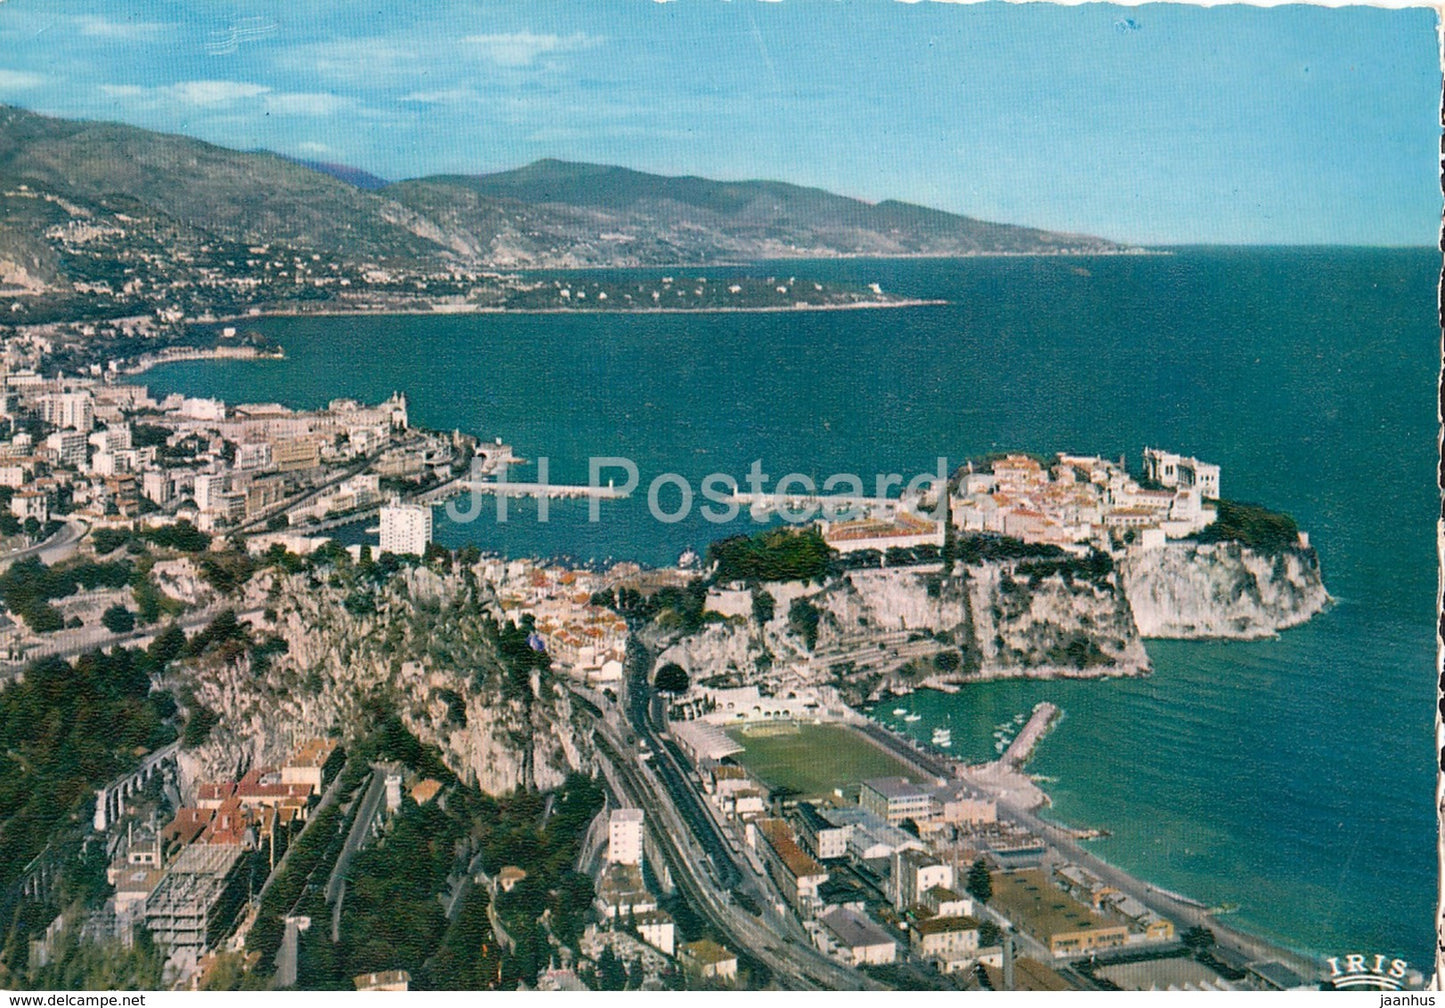 Monaco - Reflets De La Cote d'Azur - vue panoramique - Au loin le Cap Martin et l'Italie - Monaco - used - JH Postcards